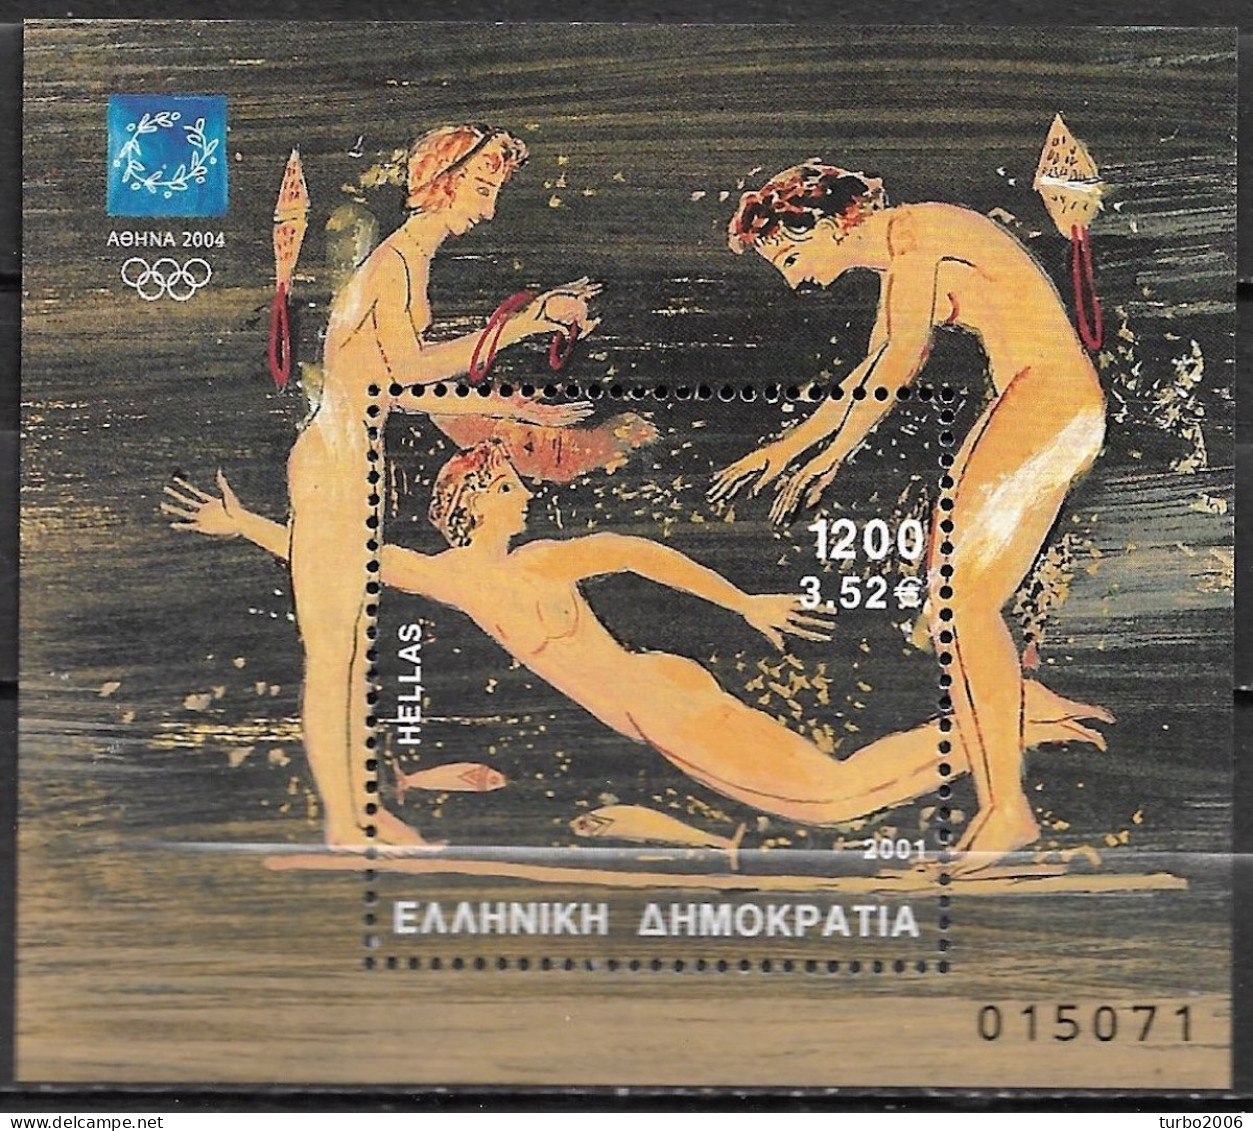 GREECE 2001 Athens 2004 2nd Issue Olympic Games Miniature Sheet Dr. 1200 Vl. B 19 MNH - Blokken & Velletjes